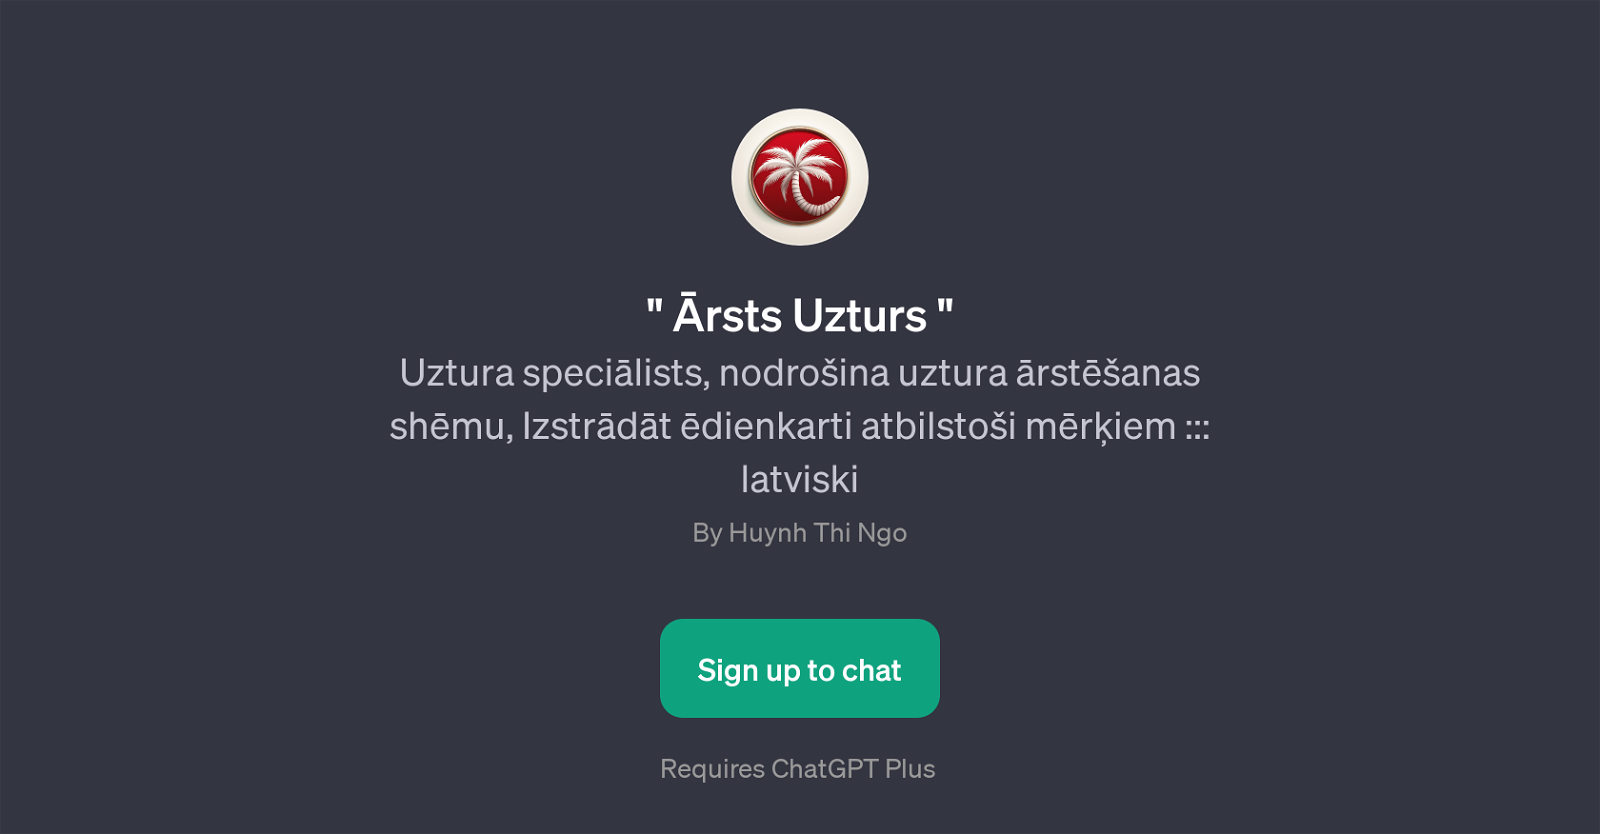 rsts Uzturs website